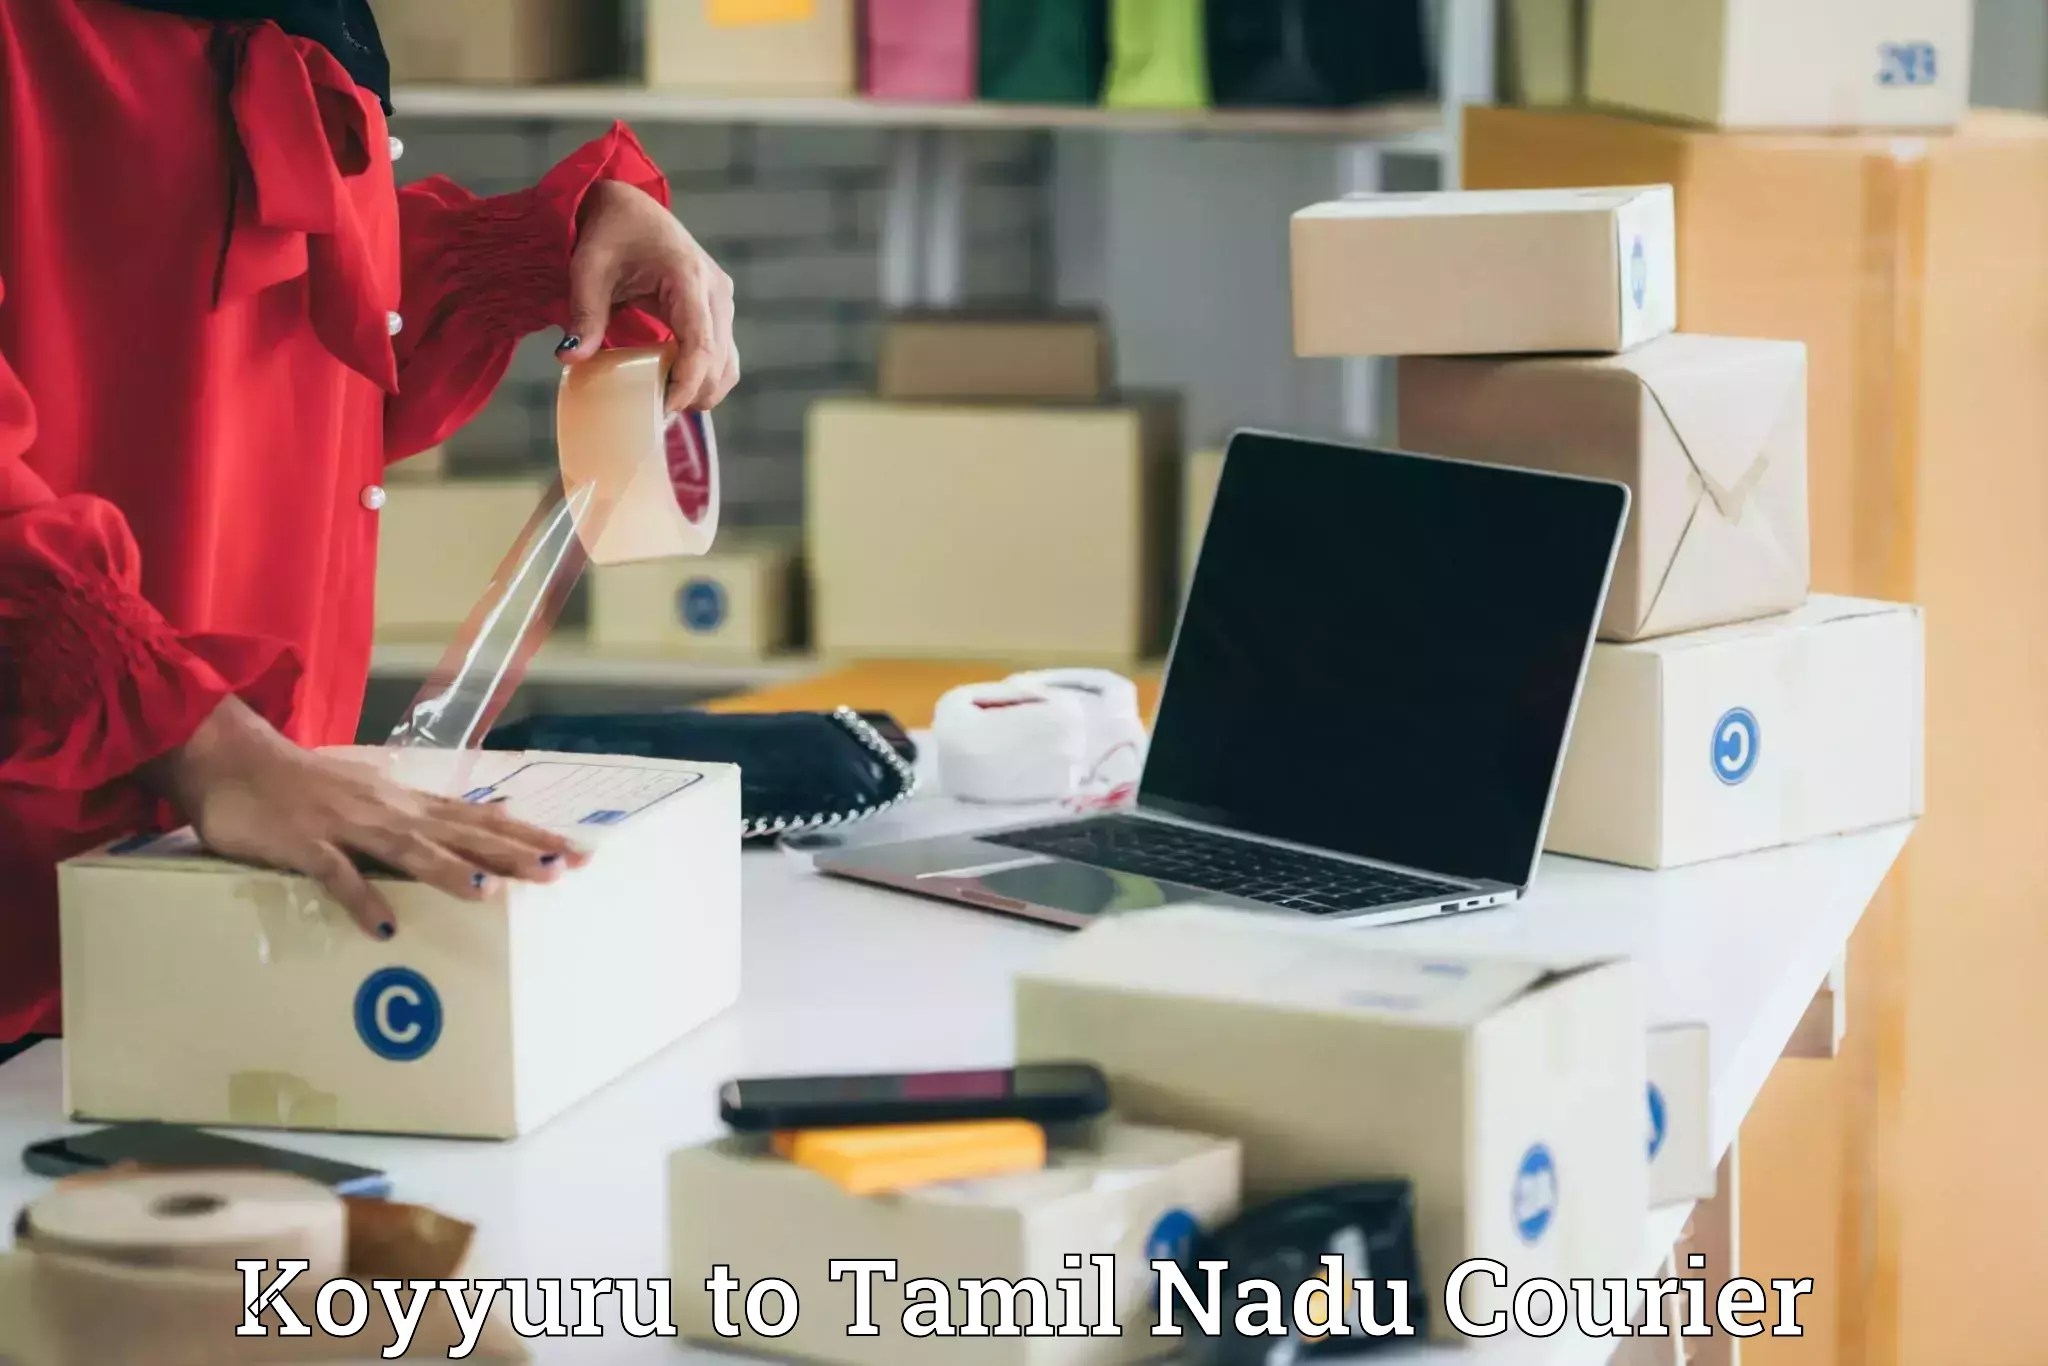 Weekend courier service Koyyuru to Tamil Nadu